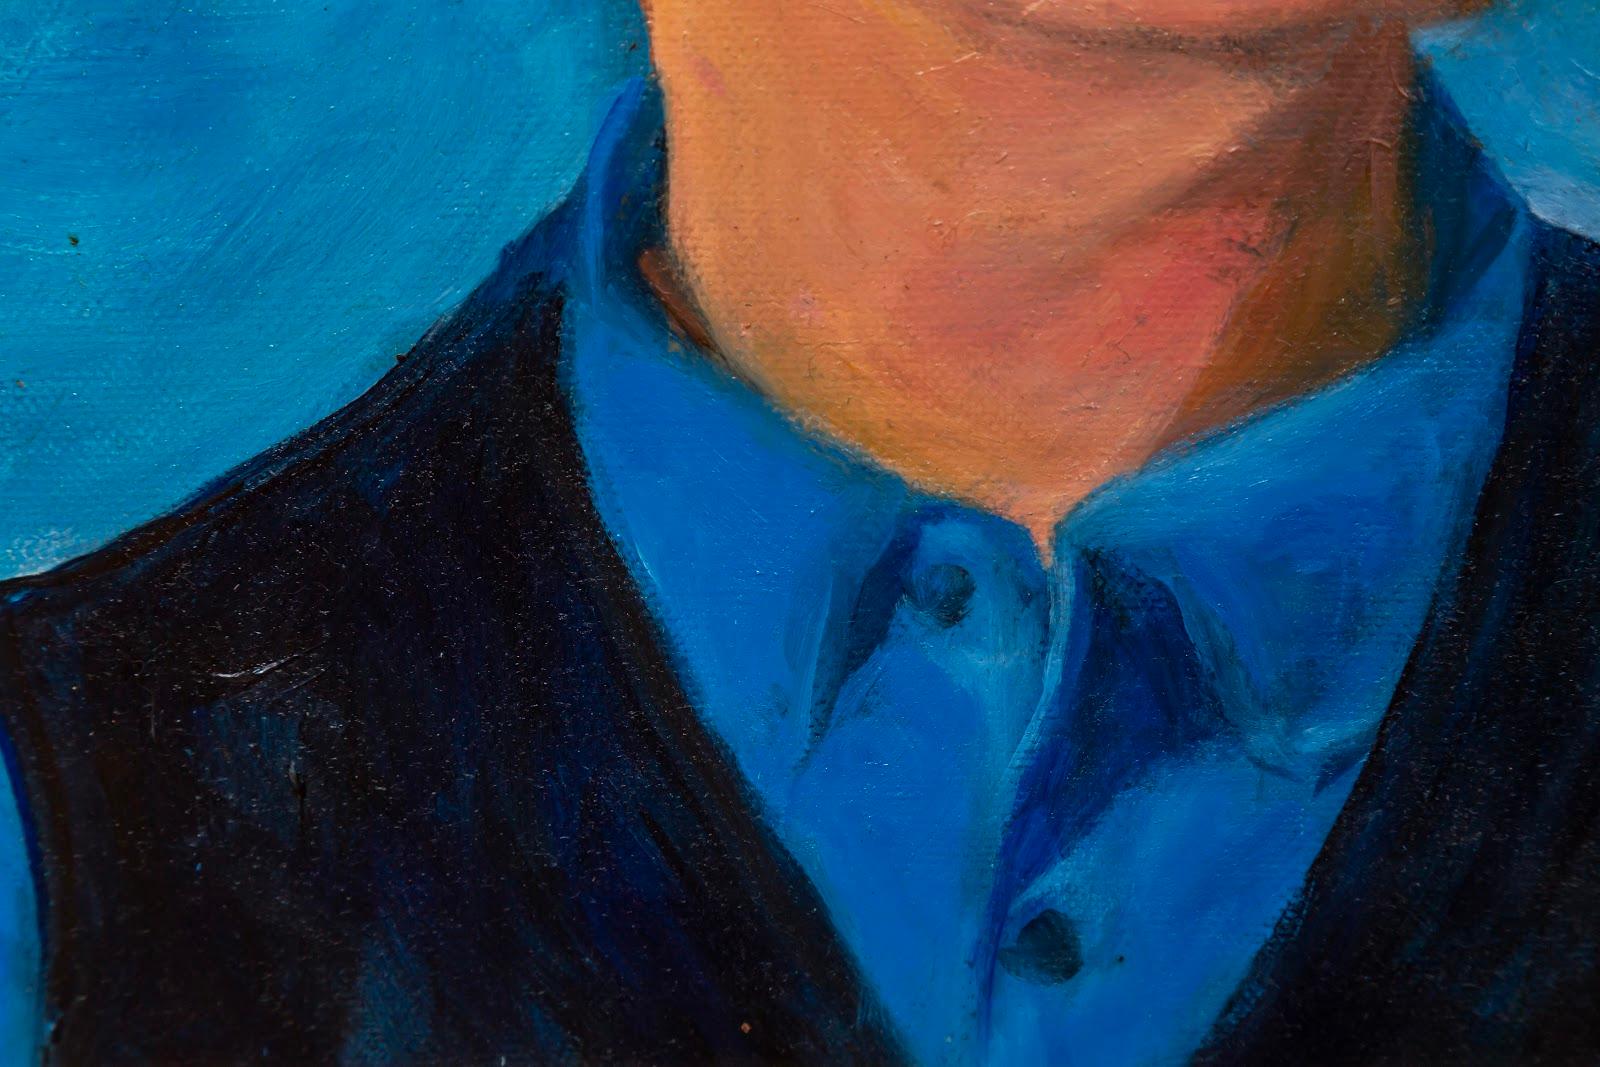 Eliza Chui
Cowboy In Blue ,2019

Oil on canvas 
40x50cm
